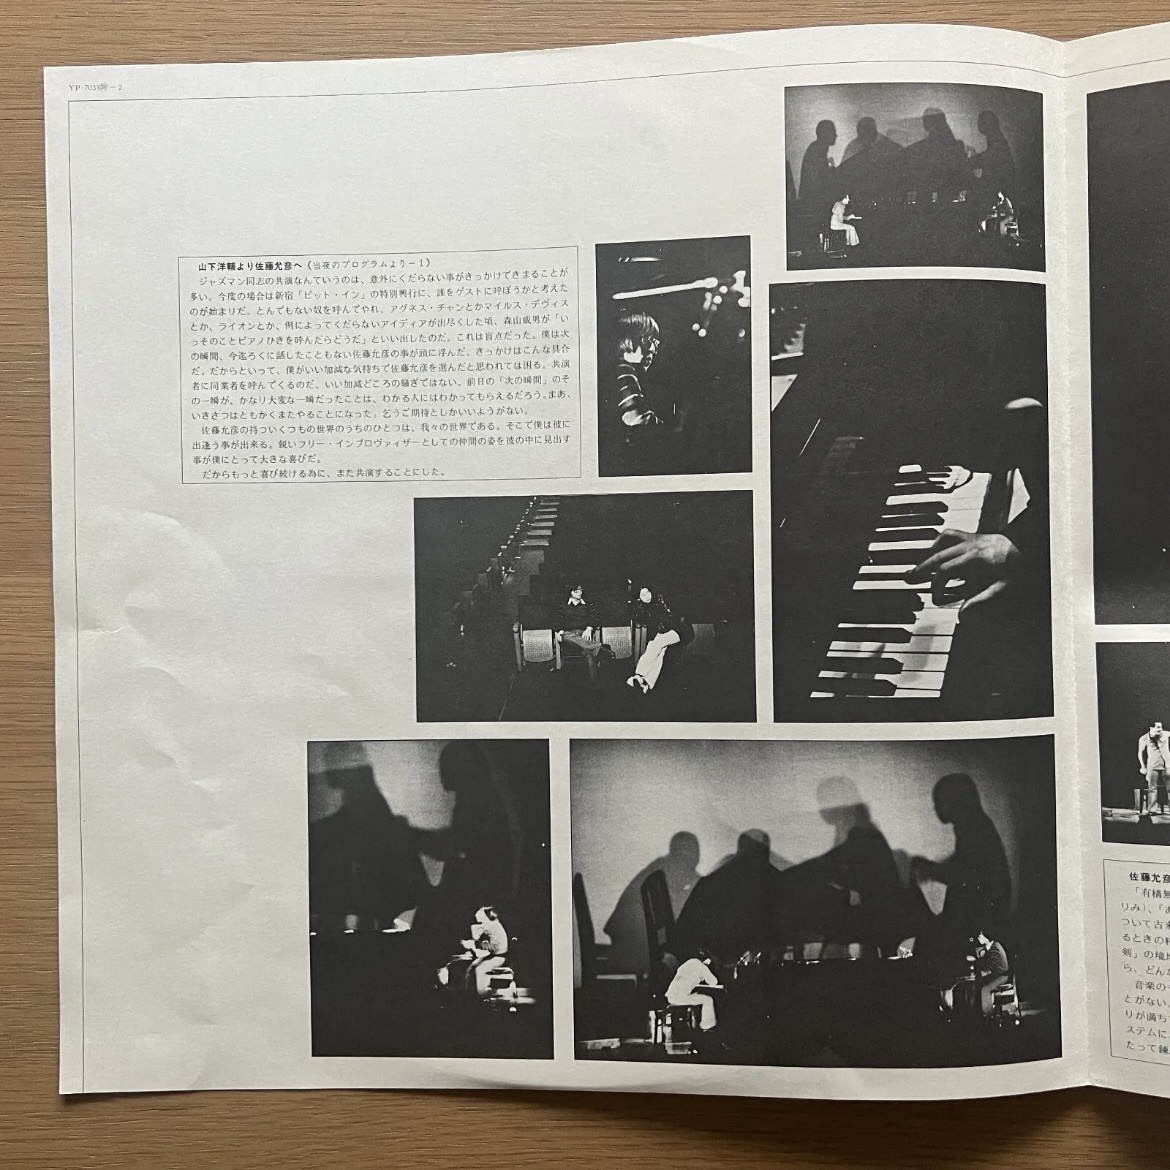 佐藤允彦 & 山下洋輔 Piano Duo 国内オリジナル盤 LP 1974 和ジャズ COLUMBIA YP-7033-N_画像4